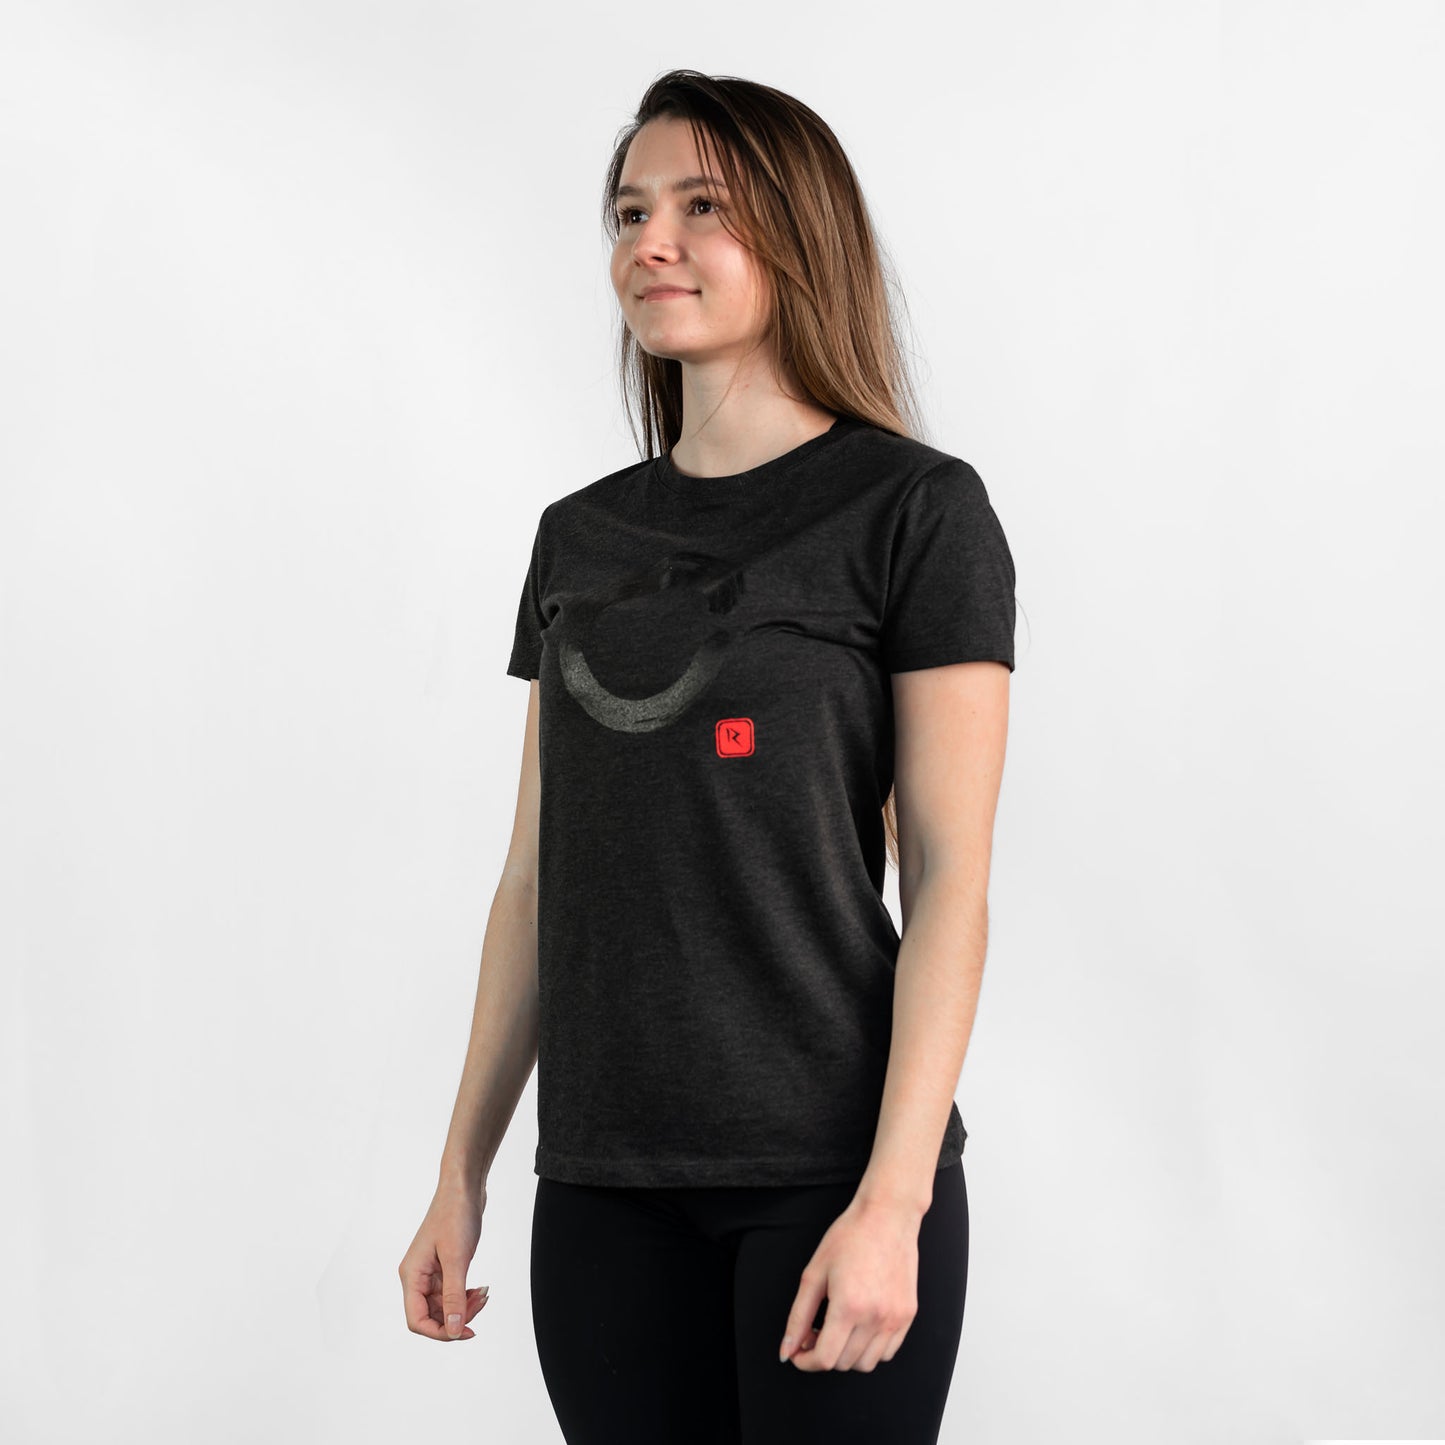 T-shirt Femme "Enso" Gris foncé